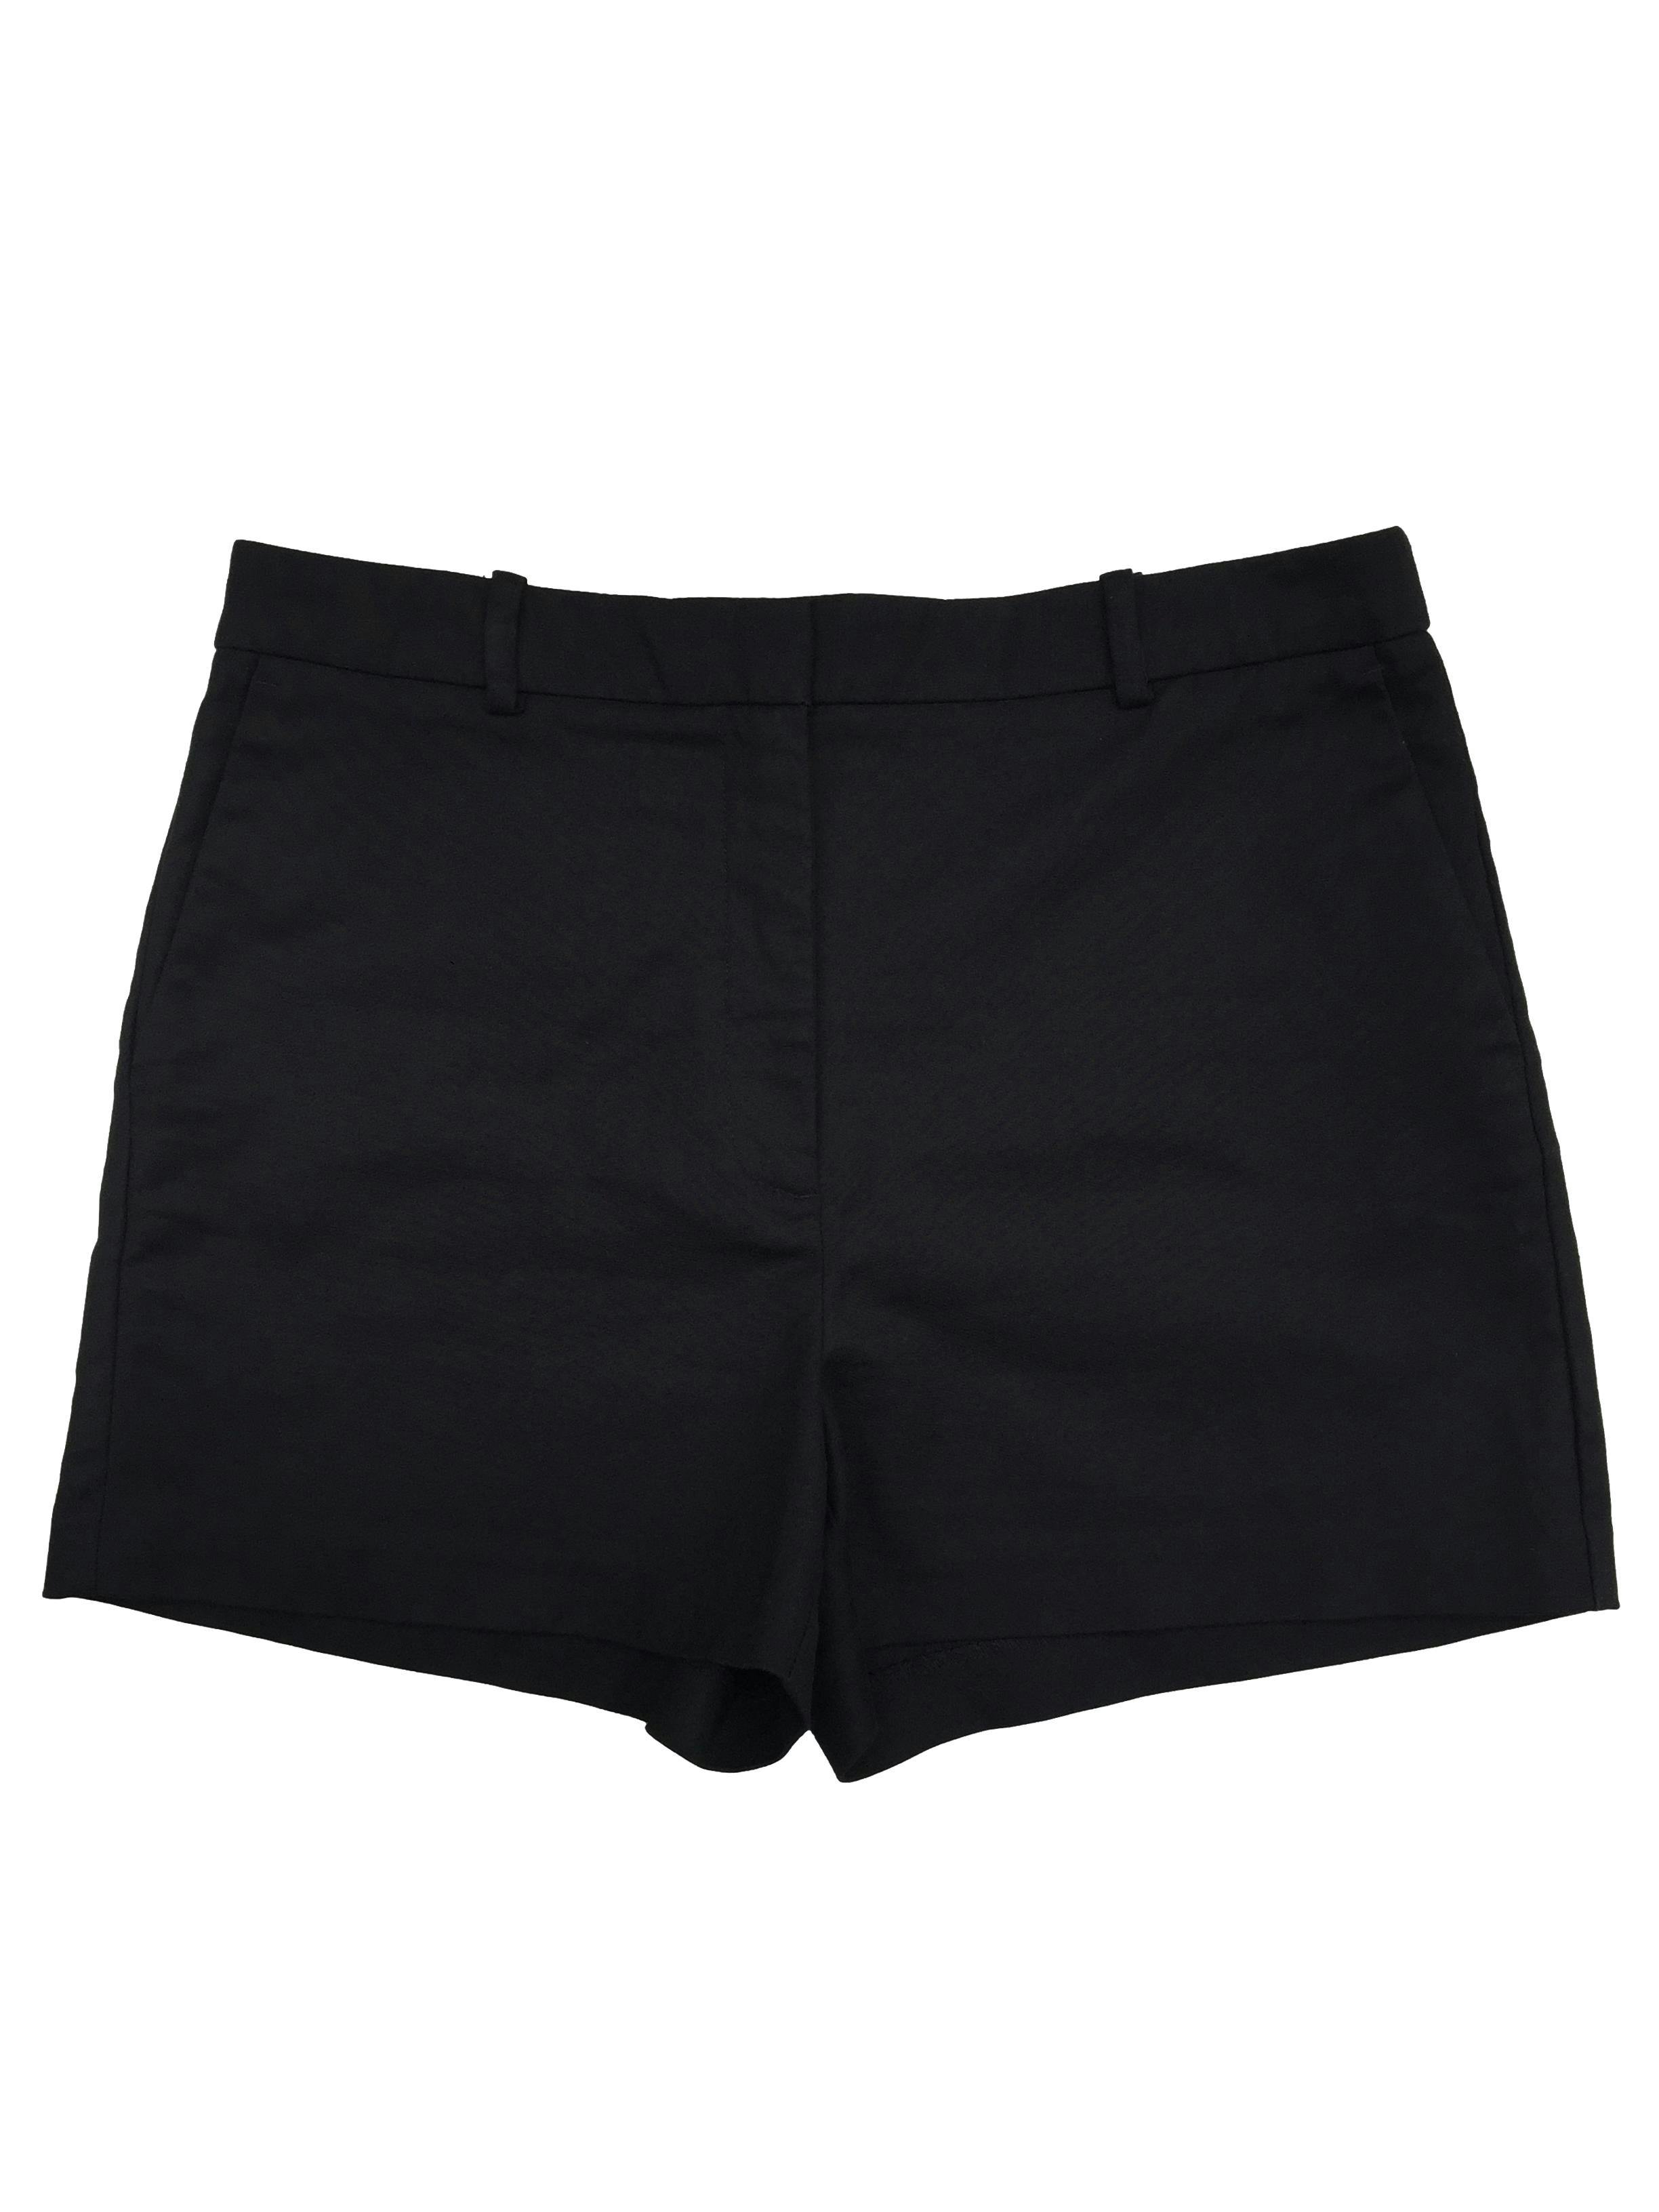 Short Zara negro 97% algodón, cierre invisible, precintos para cinturón. Cintura 84cm, Tiro 31cm, Largo 37cm.